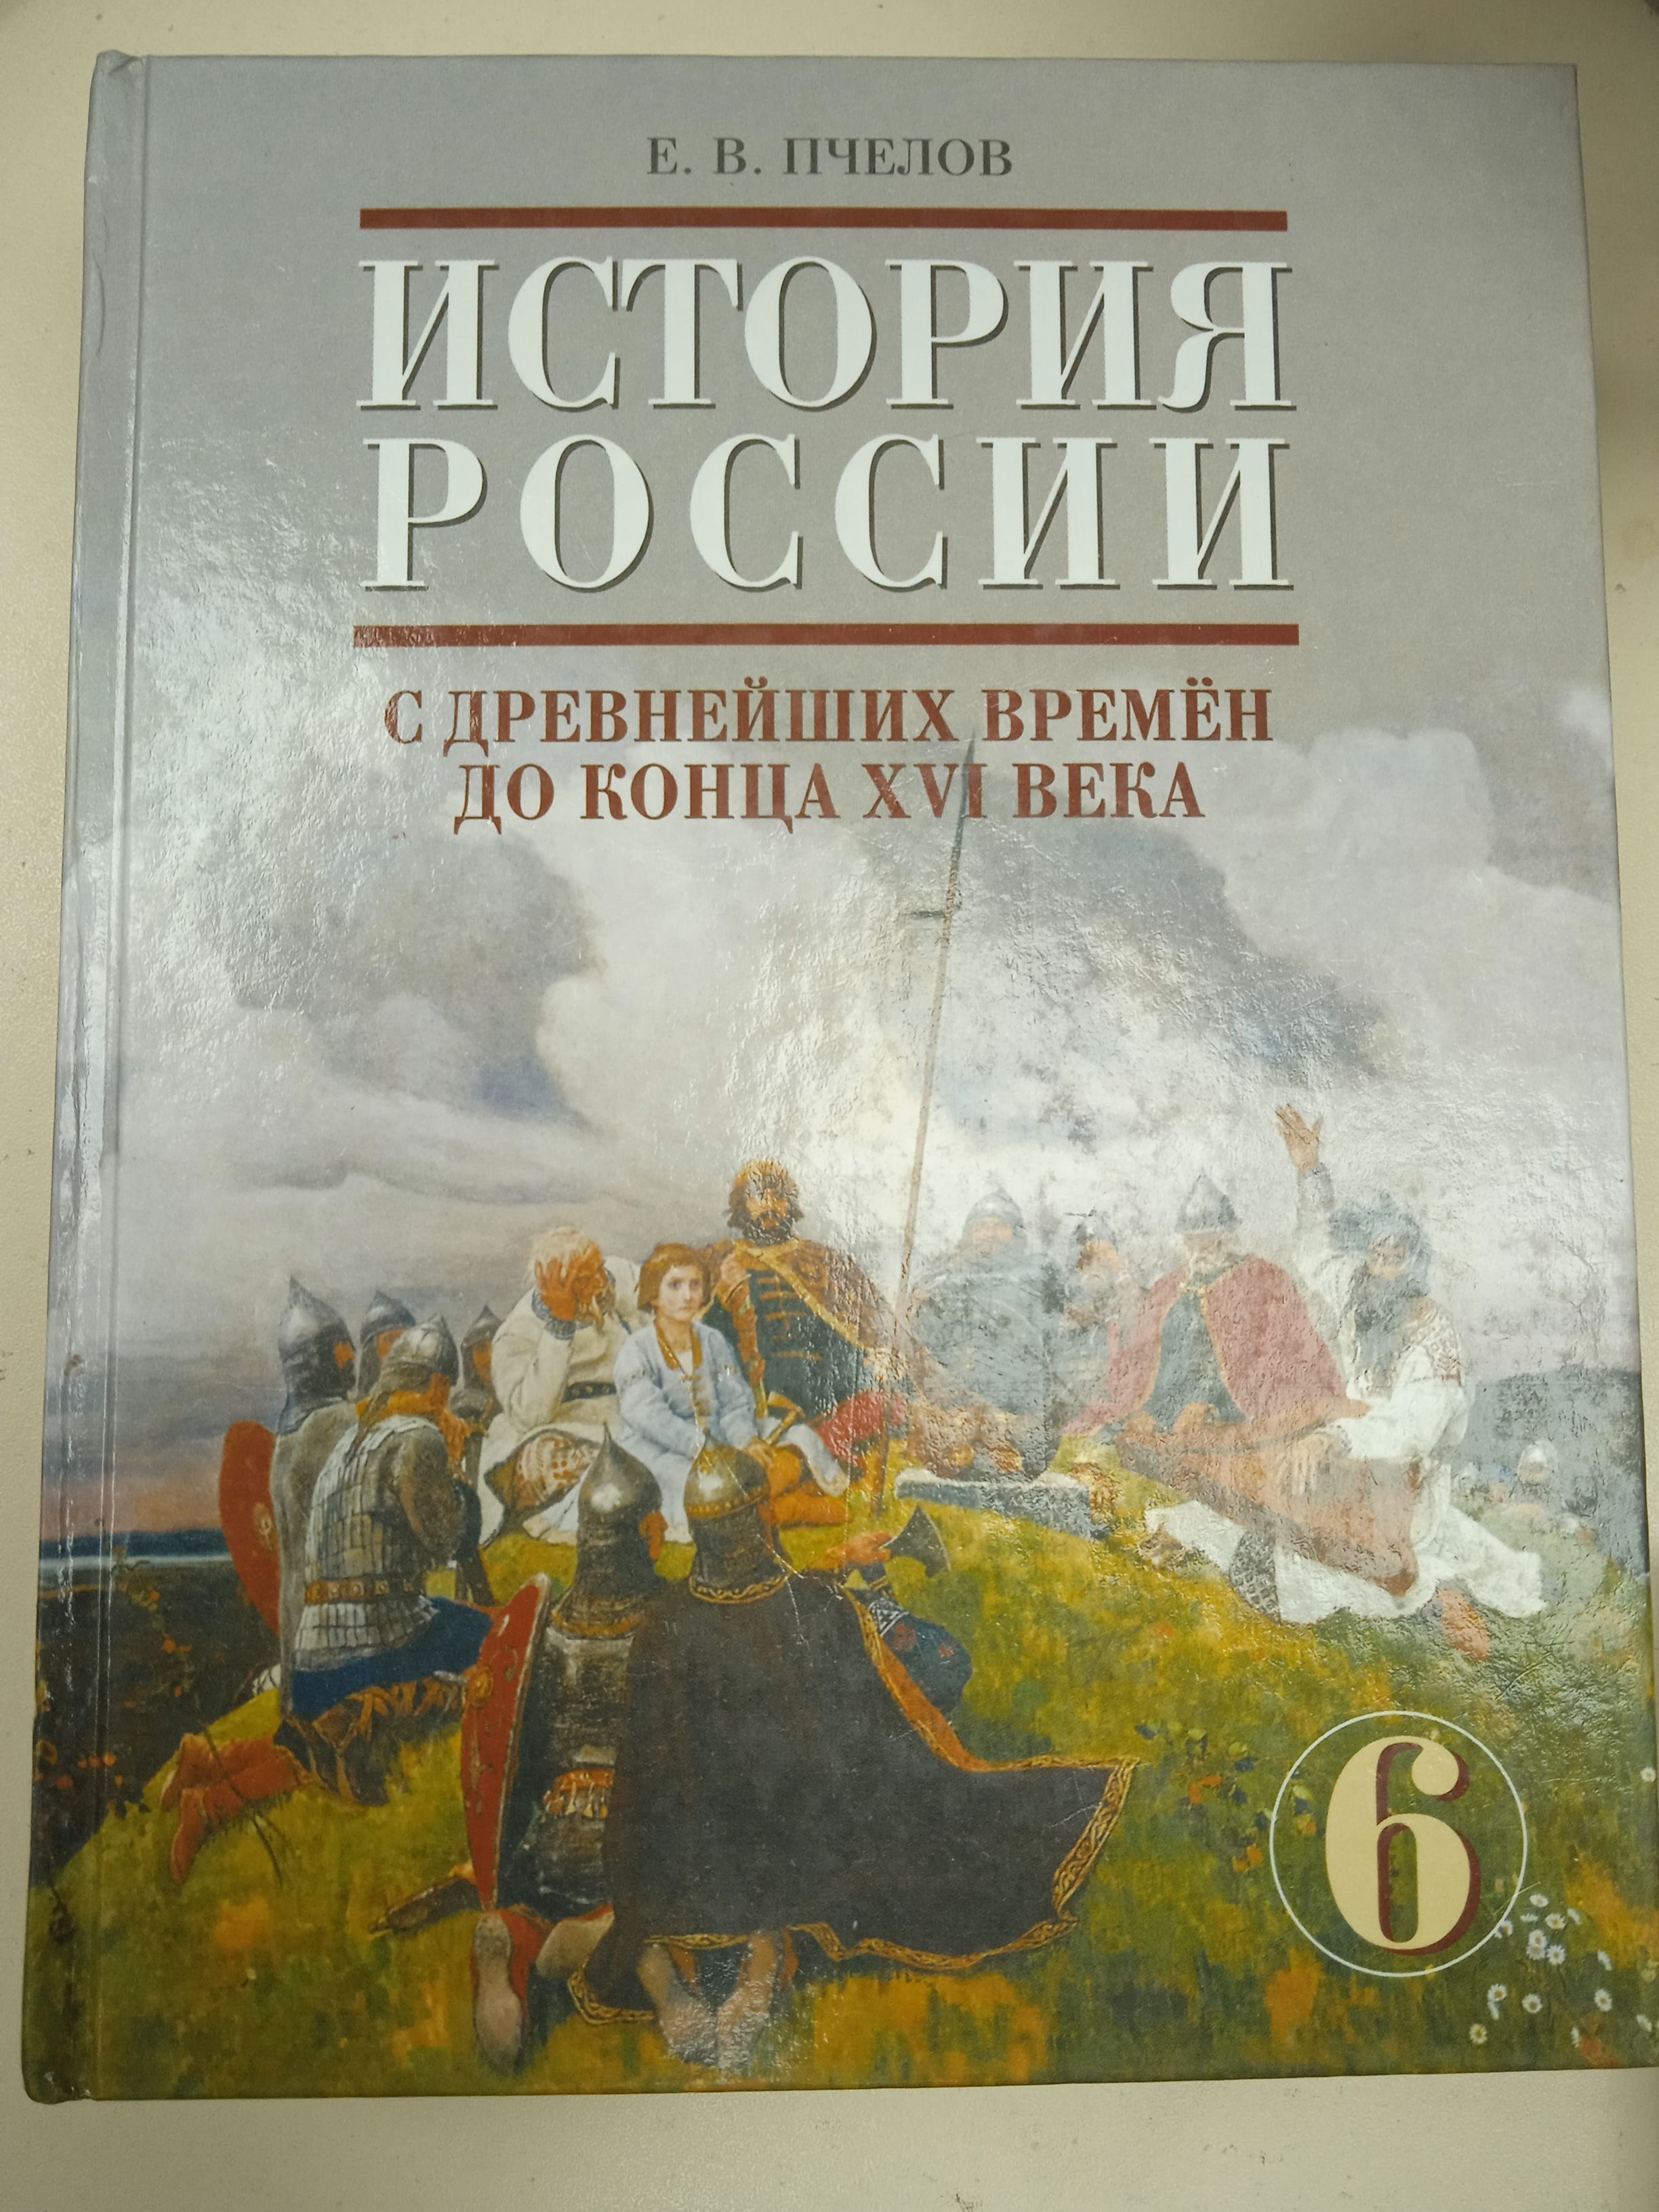 История россии 6 класс учебник читать пчелов